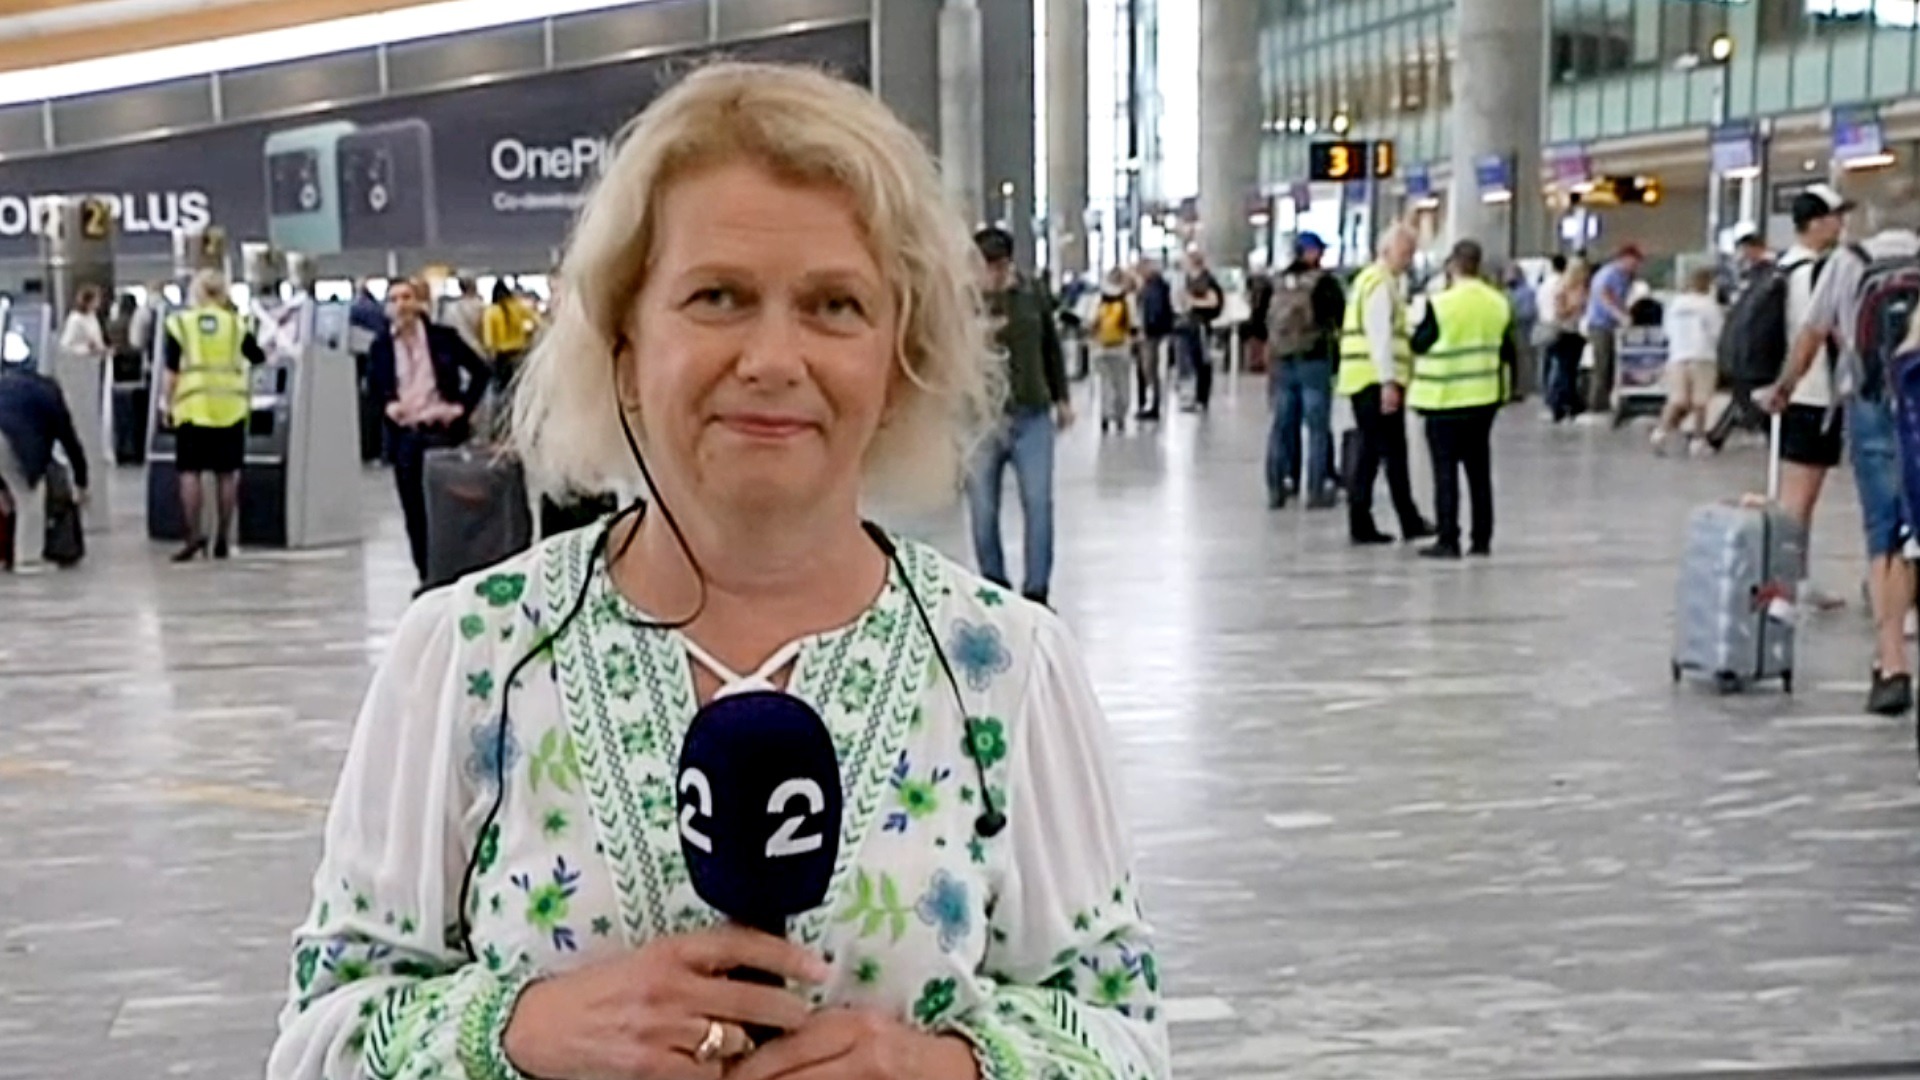 Slik ser det ut på Oslo lufthavn: – Avventende stemning